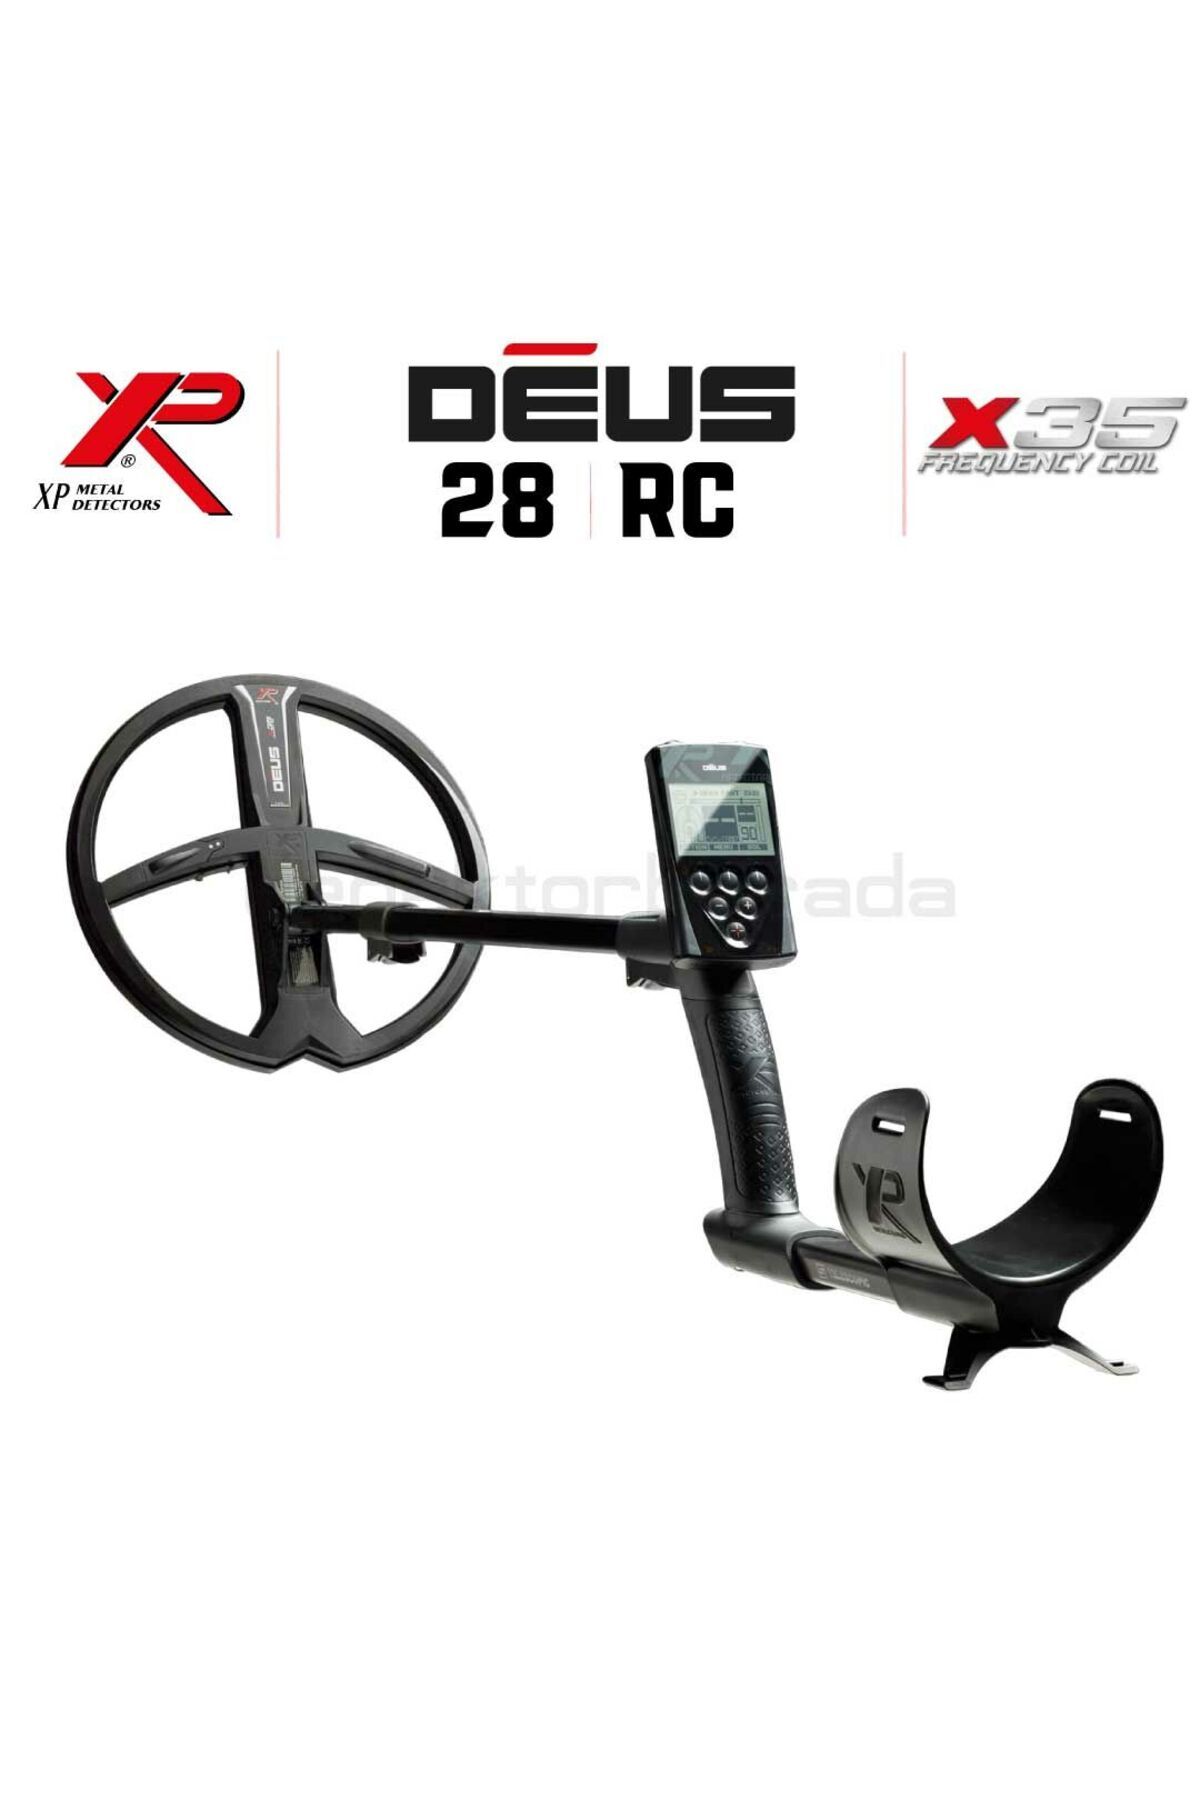 xp Deus Dedektör - 28cm X35 Başlık, Ana Kontrol Ünitesi